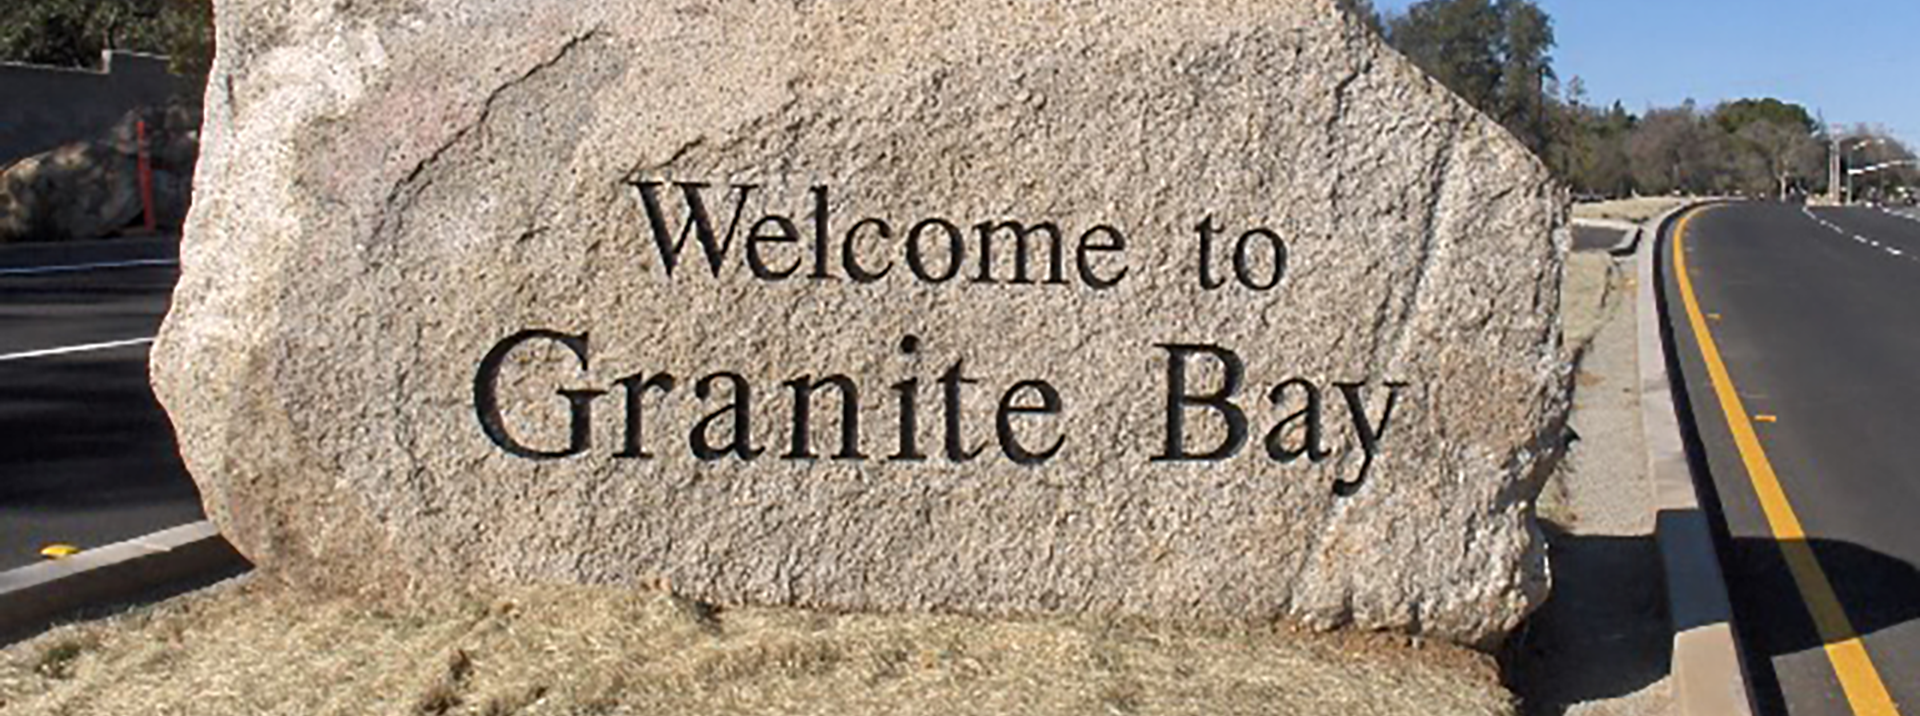 Granite Bay Background Image | Bertinis German Motors